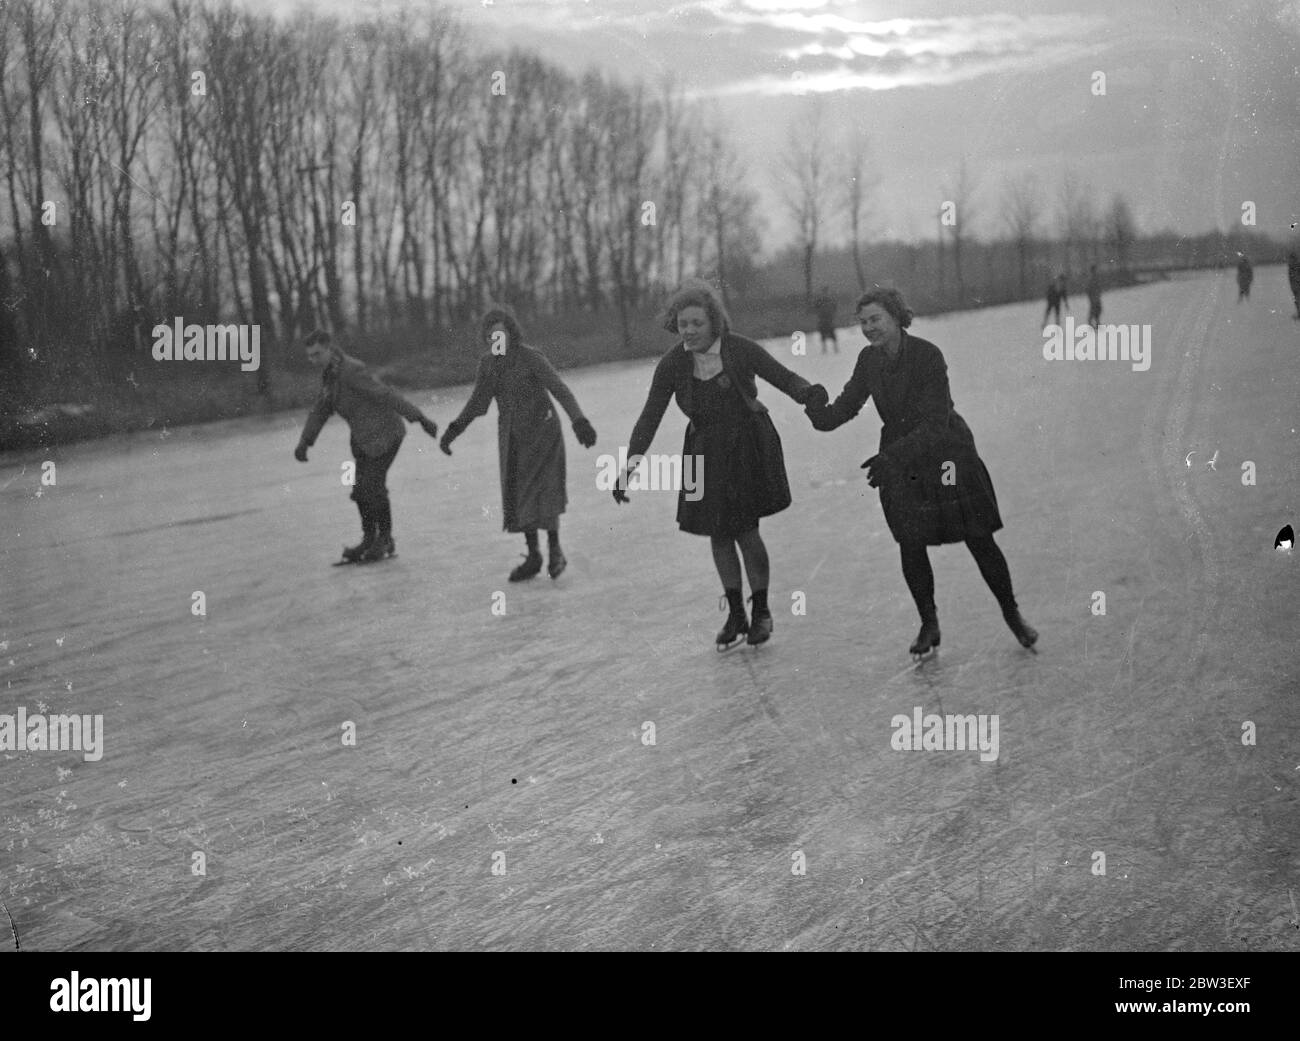 Skating in vollem Gange auf berühmten Lingay Fen, Lincolnshire. Ein allgemeiner Blick auf das Skaten auf Lingay Fen. 22 Dezember 1935 Stockfoto